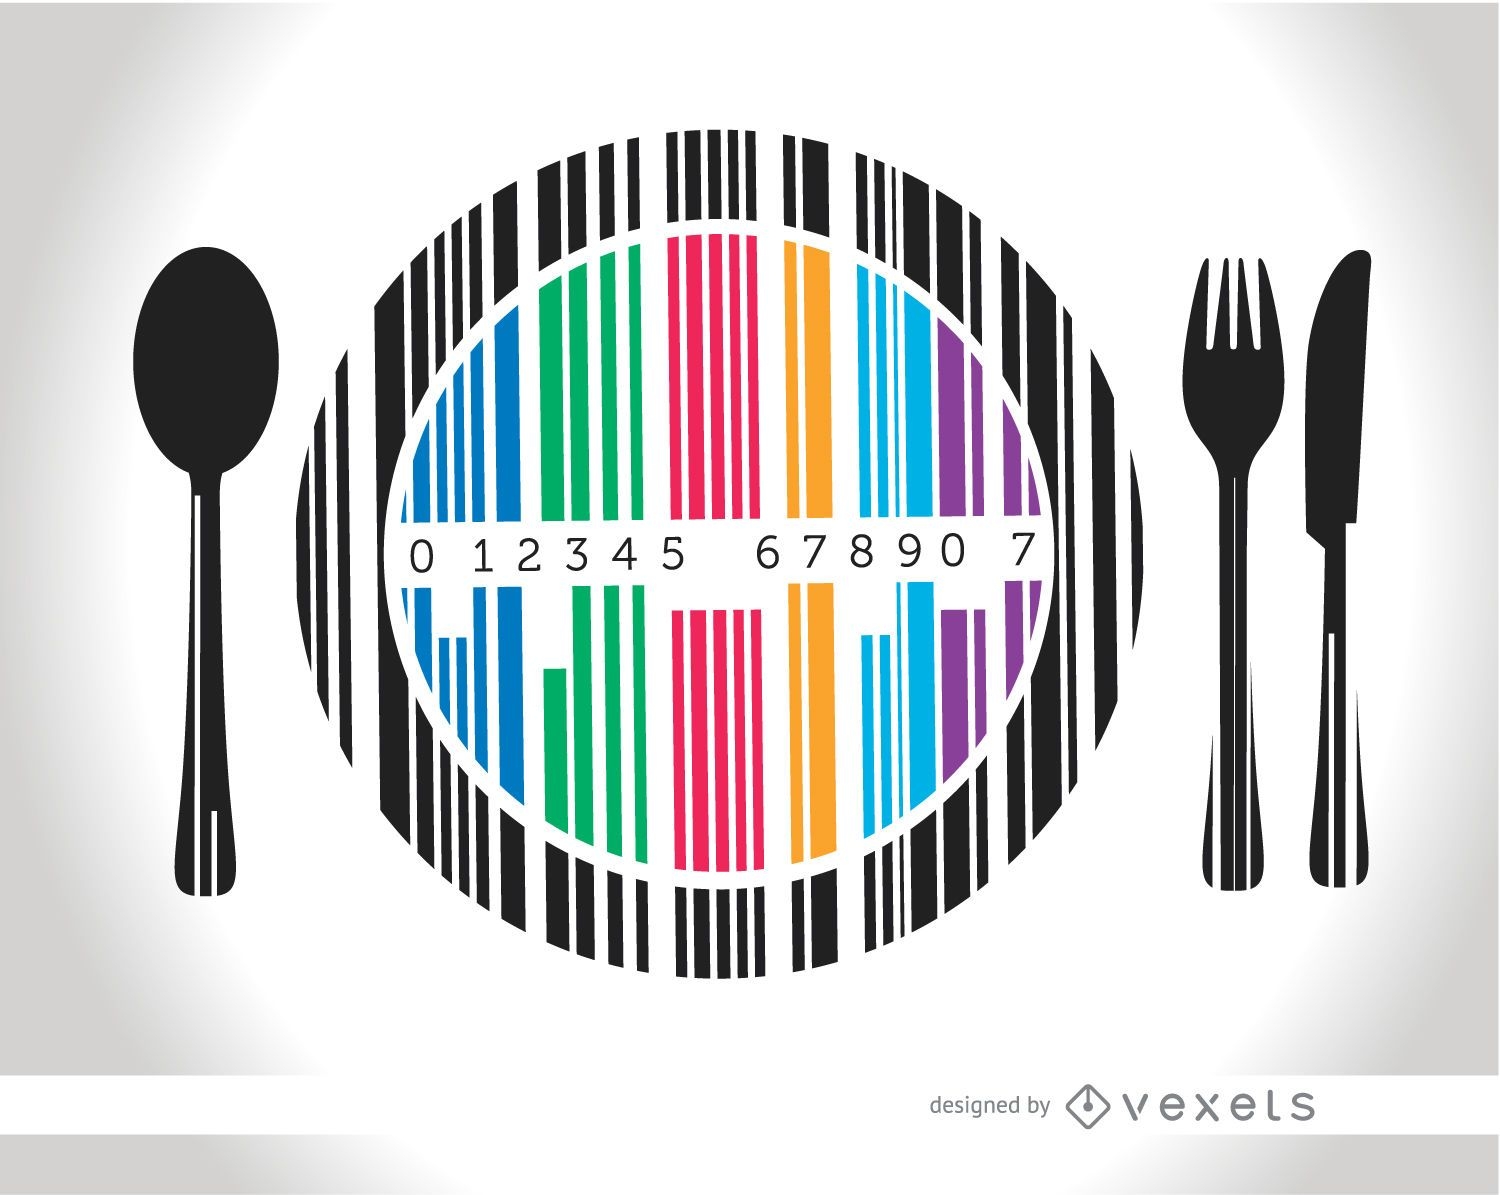 Codebar dish cutlery